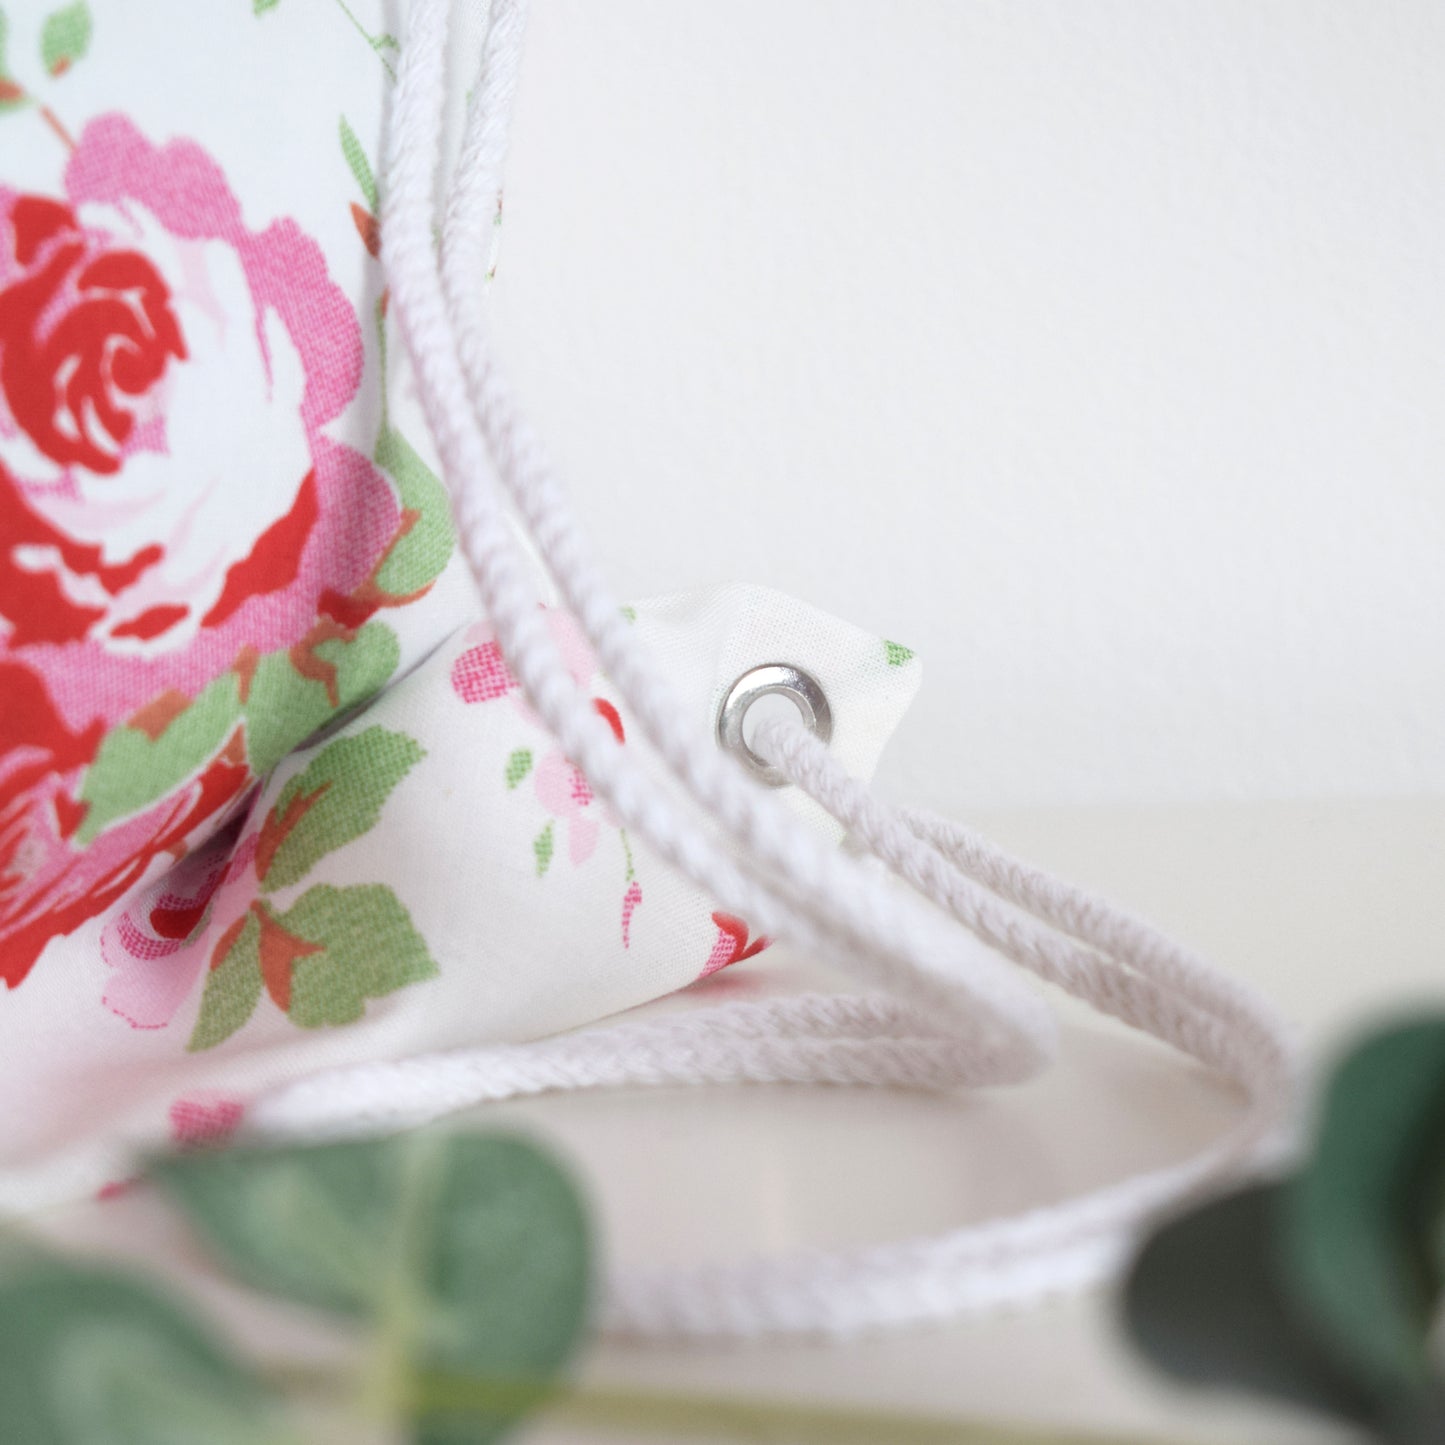 Personalised Floral Rose Drawstring Bag